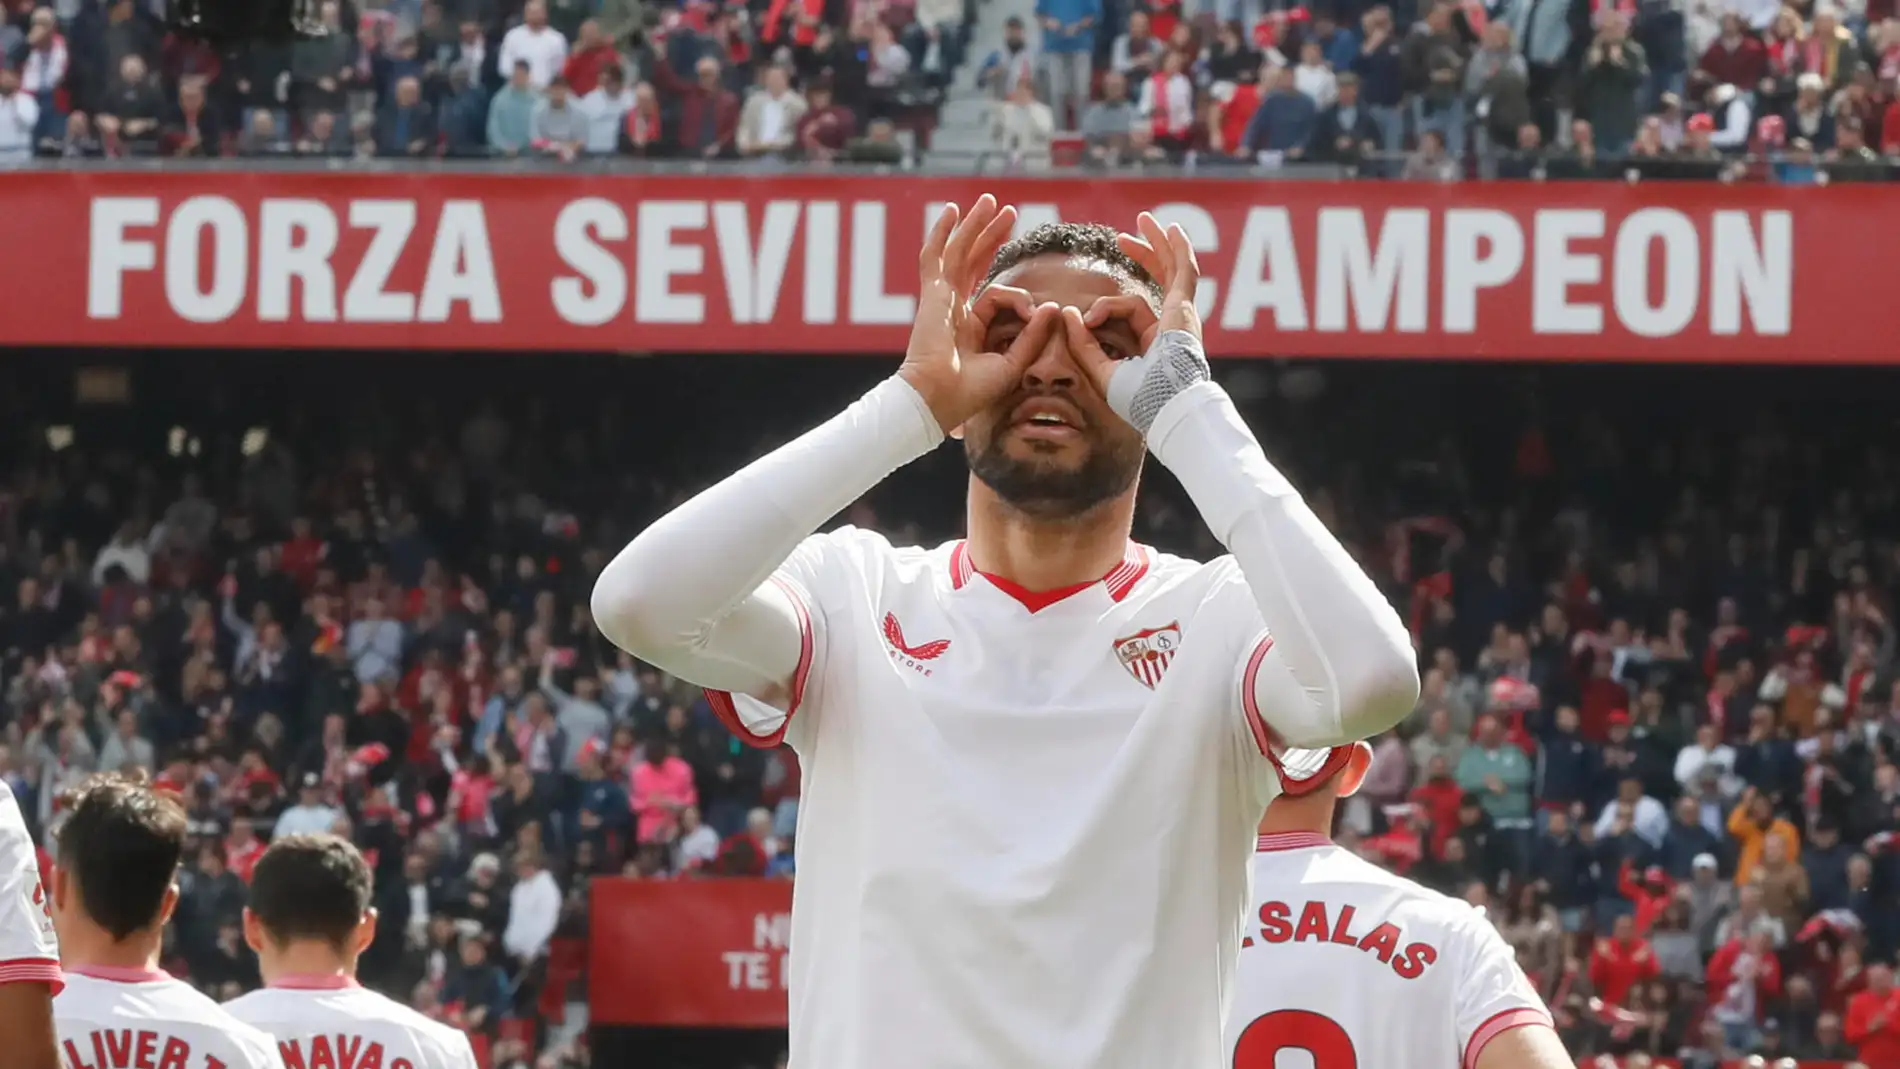 El delantero marroquí del Sevilla Youssef En-Nesyri, celebra su primer gol contra la Real Sociadad, durante el partido de LaLiga EA Sports disputado en el estadio Ramón Sánchez-Pizjuán